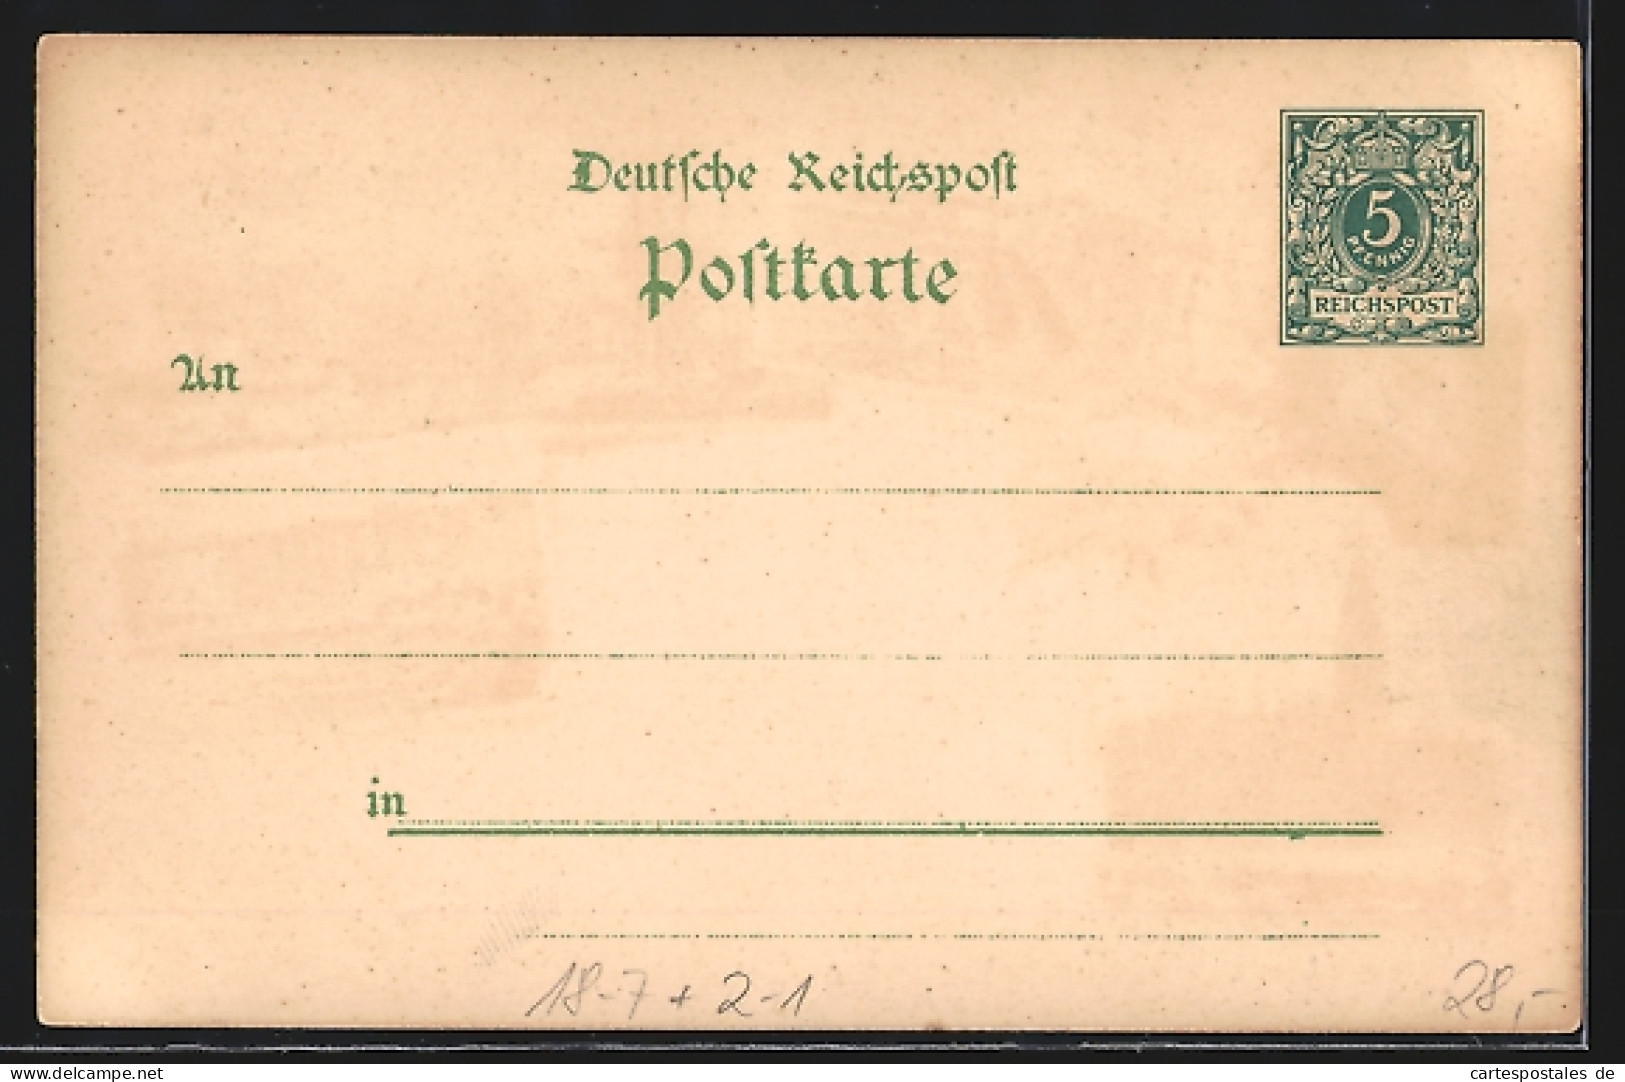 Lithographie Hamburg, 9. Deutscher Philatelistentag 1897, Hafen, Jungfernstieg, Alster Arkaden, Ganzsache  - Briefmarken (Abbildungen)